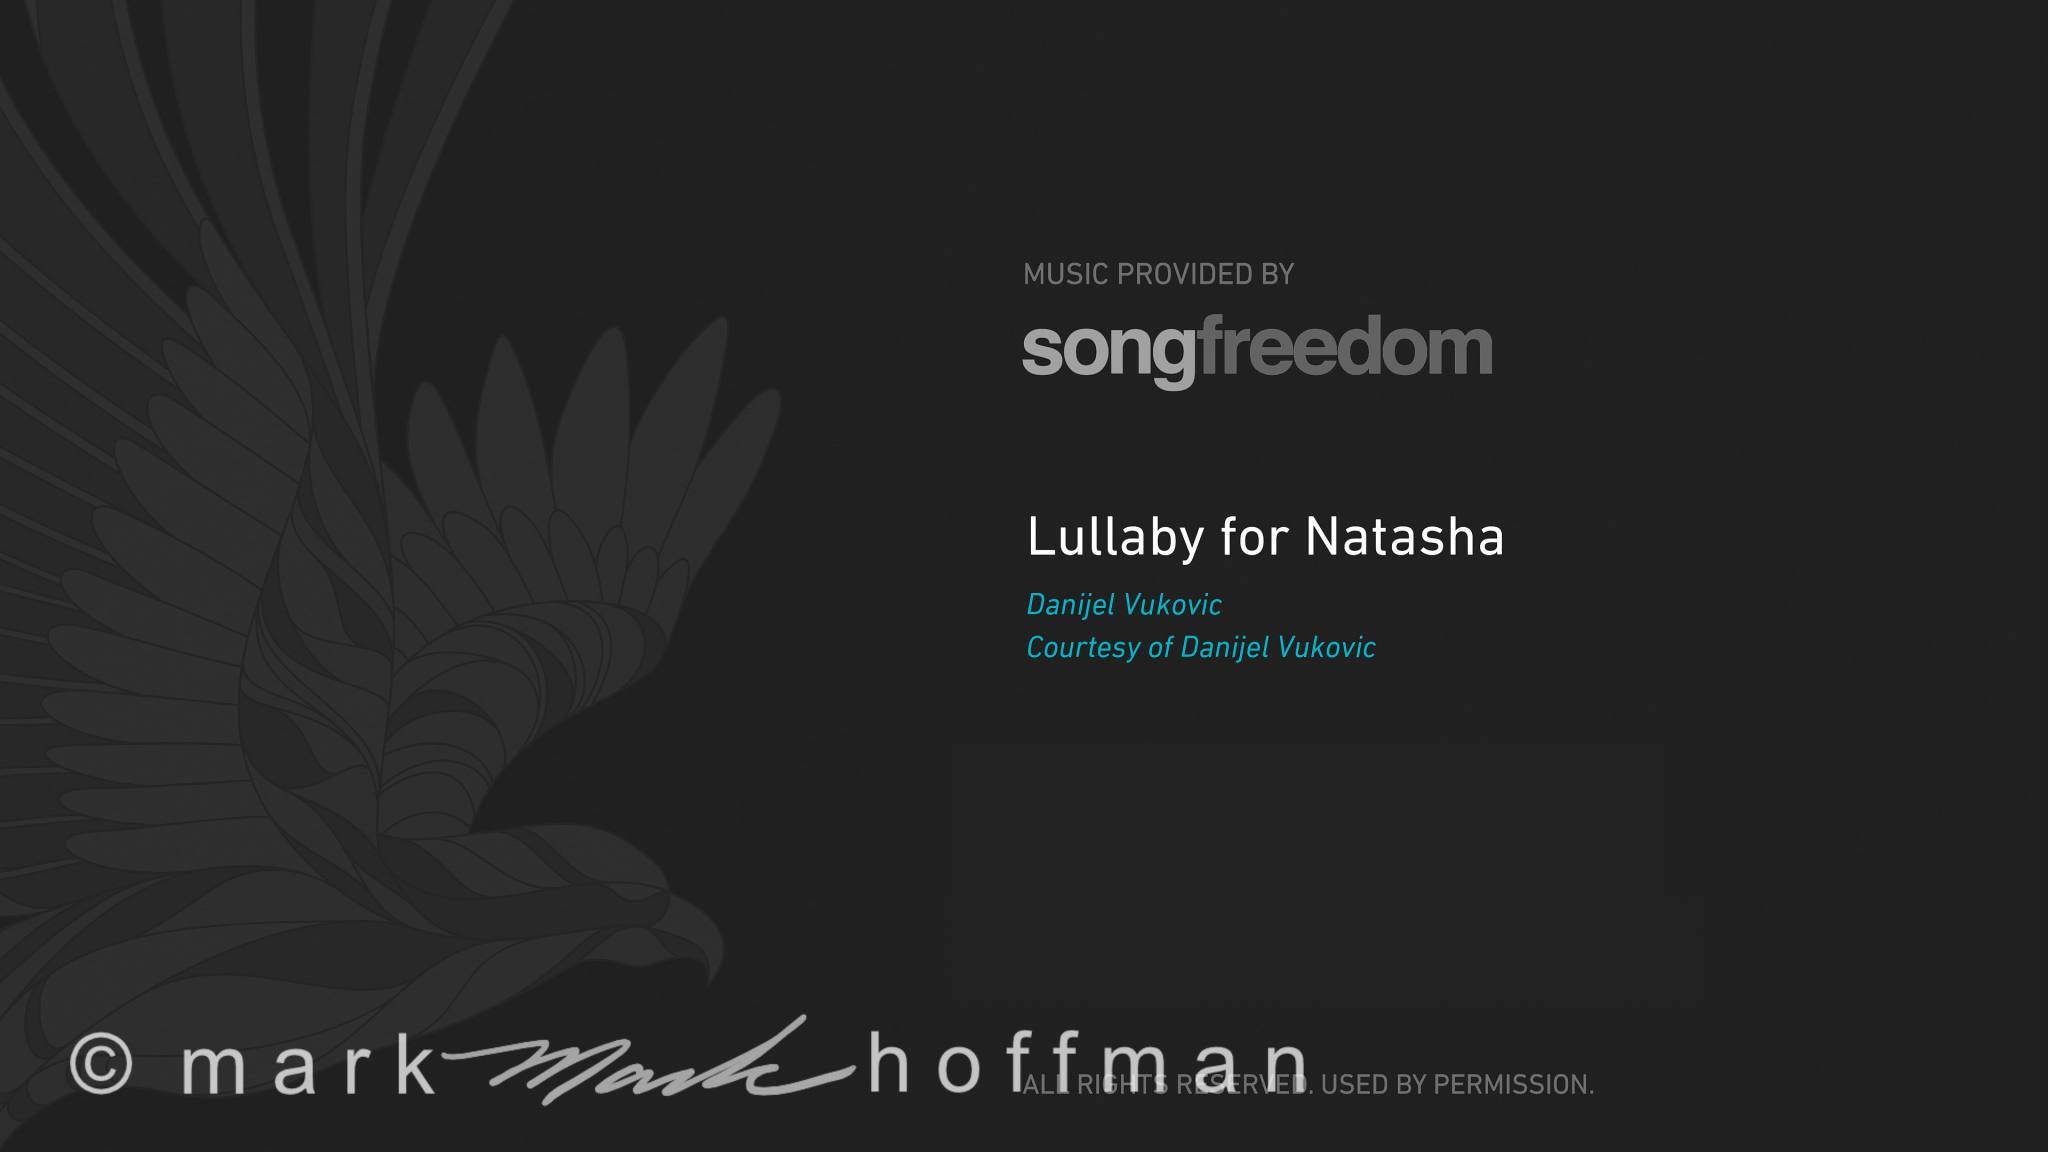 Z_Lullaby for Natasha Slide_cap1_var1.jpg